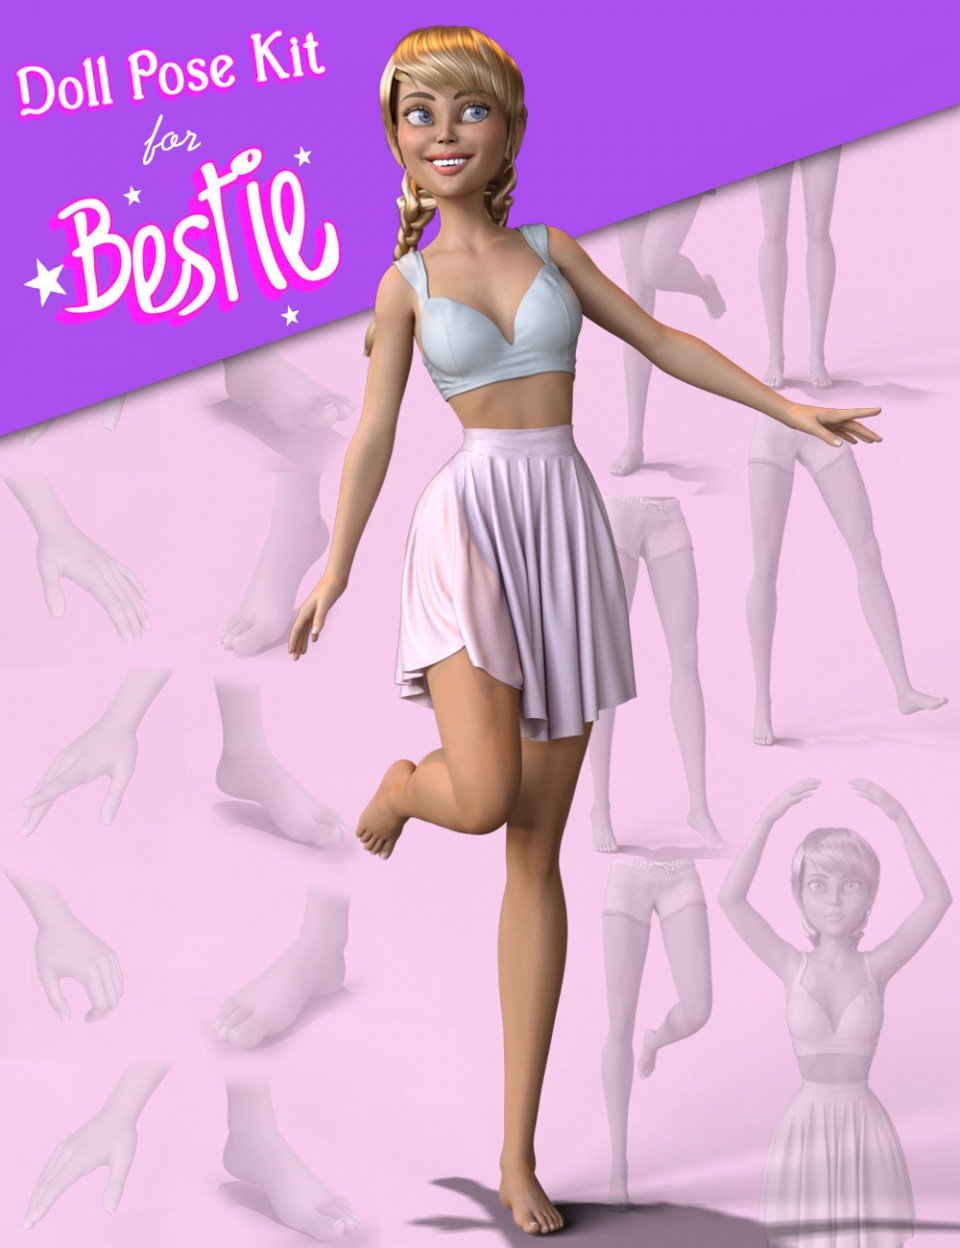 Doll Pose Kit for Bestie for The Girl 8_DAZ3D下载站